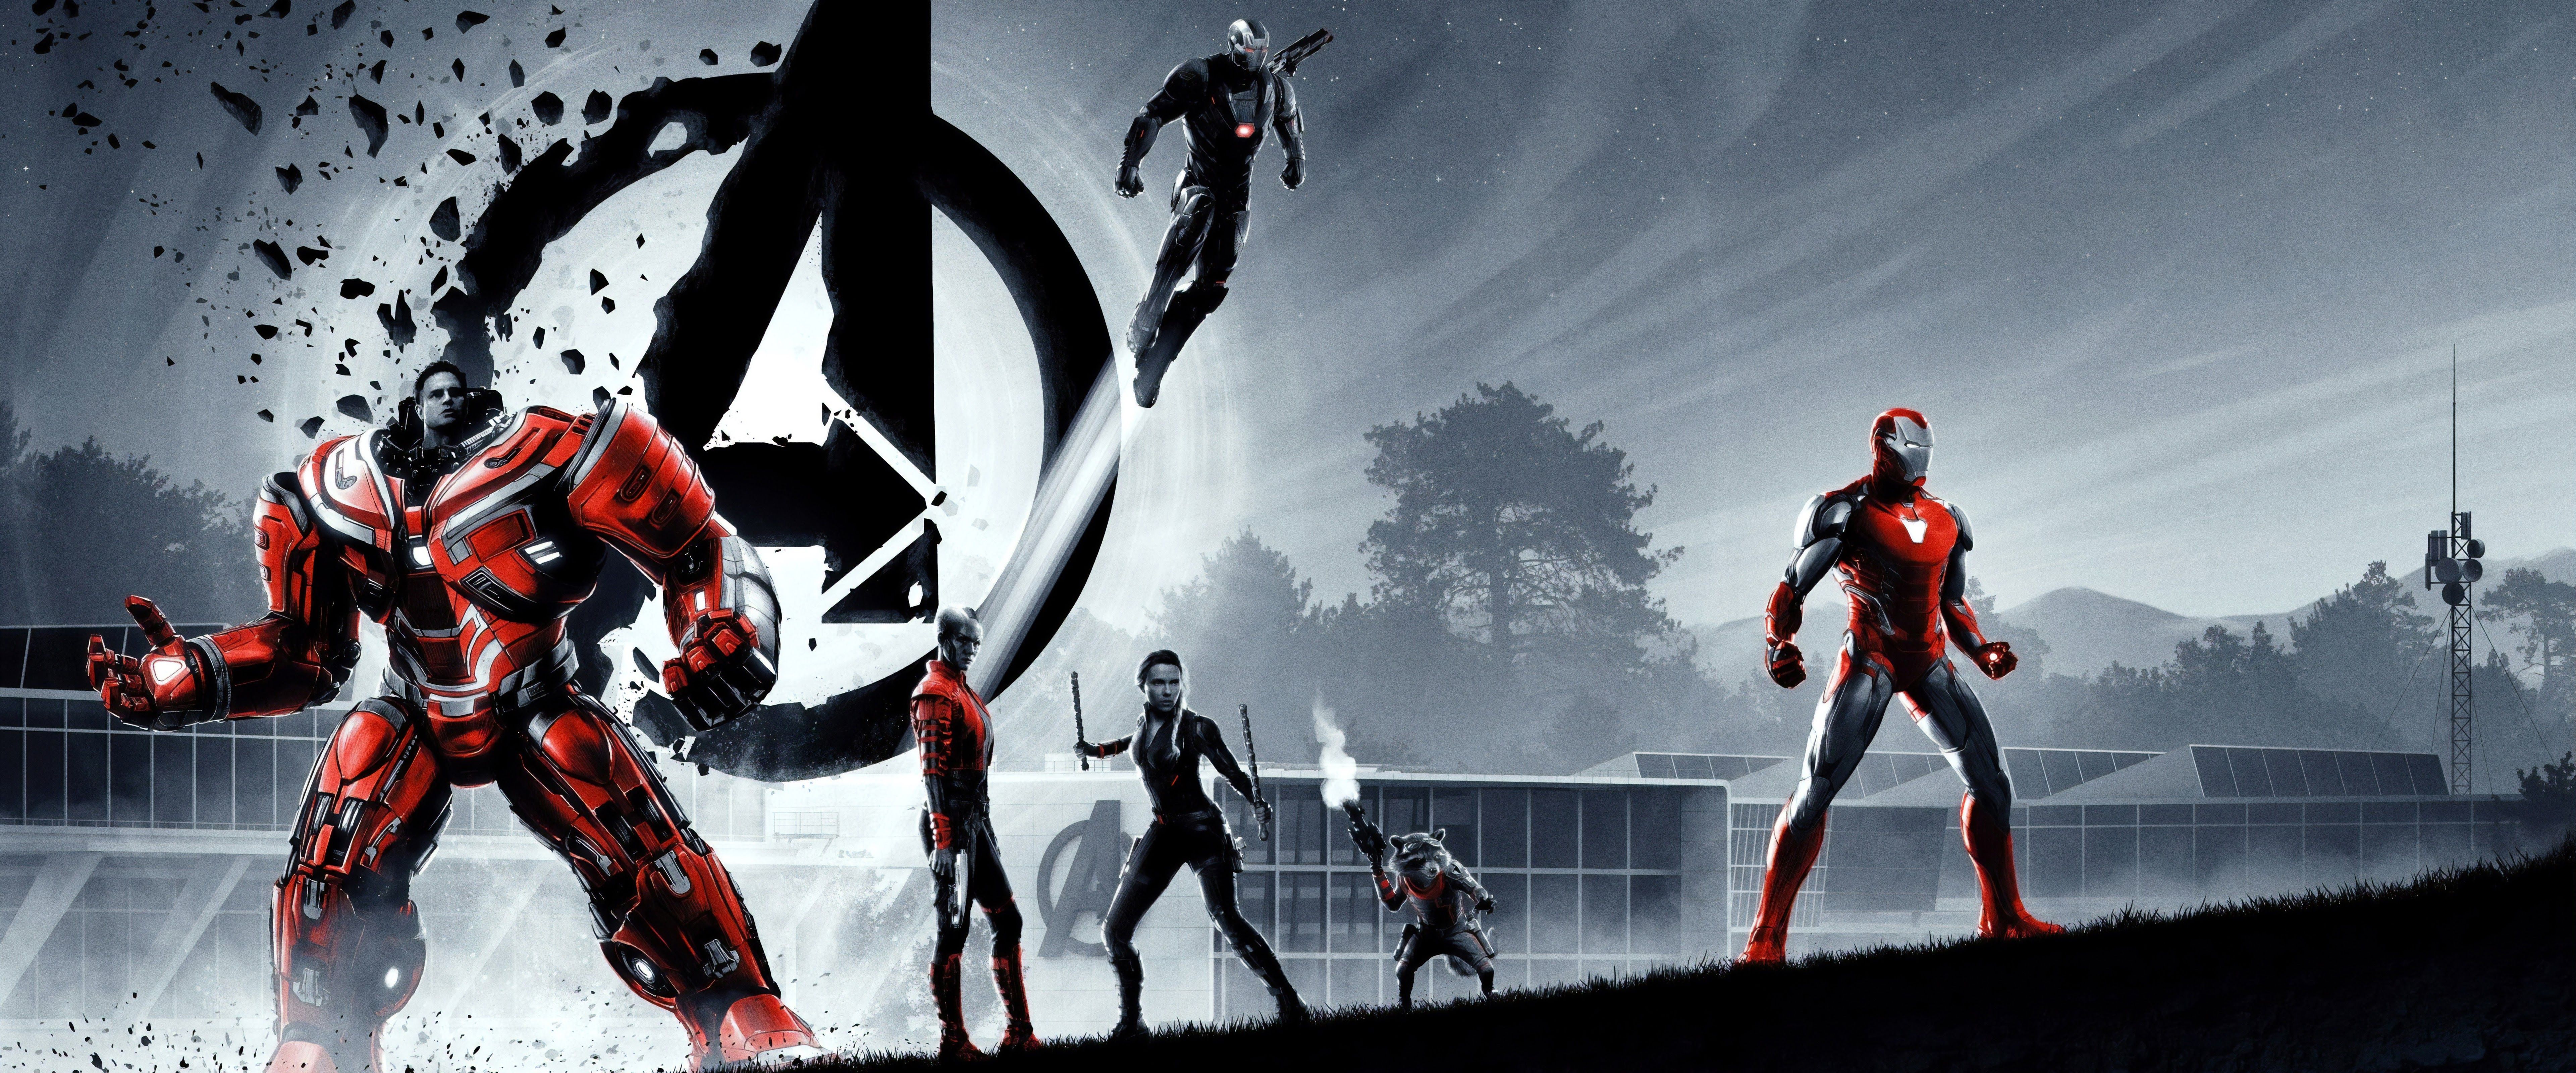 Avengers: Endgame Hulkbuster Iron Man 8K Wallpaper